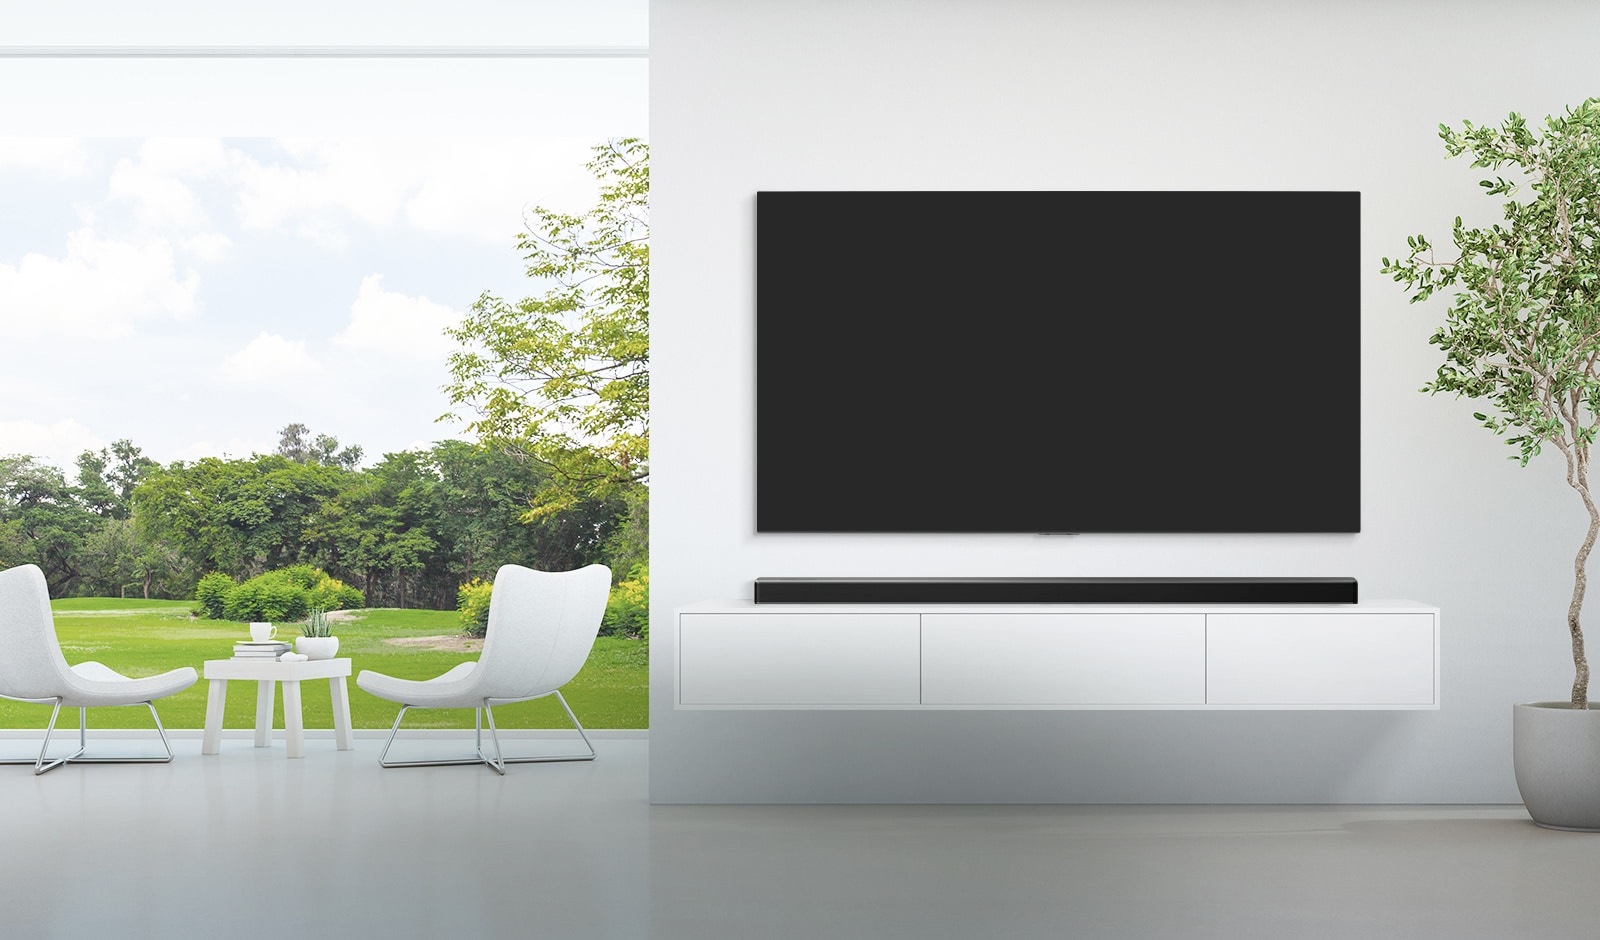 Plačioje baltoje svetainėje įrengtas televizorius ir horizontalusis garsiakalbis, o pro platų langą matomas žalio miško vaizdas. 